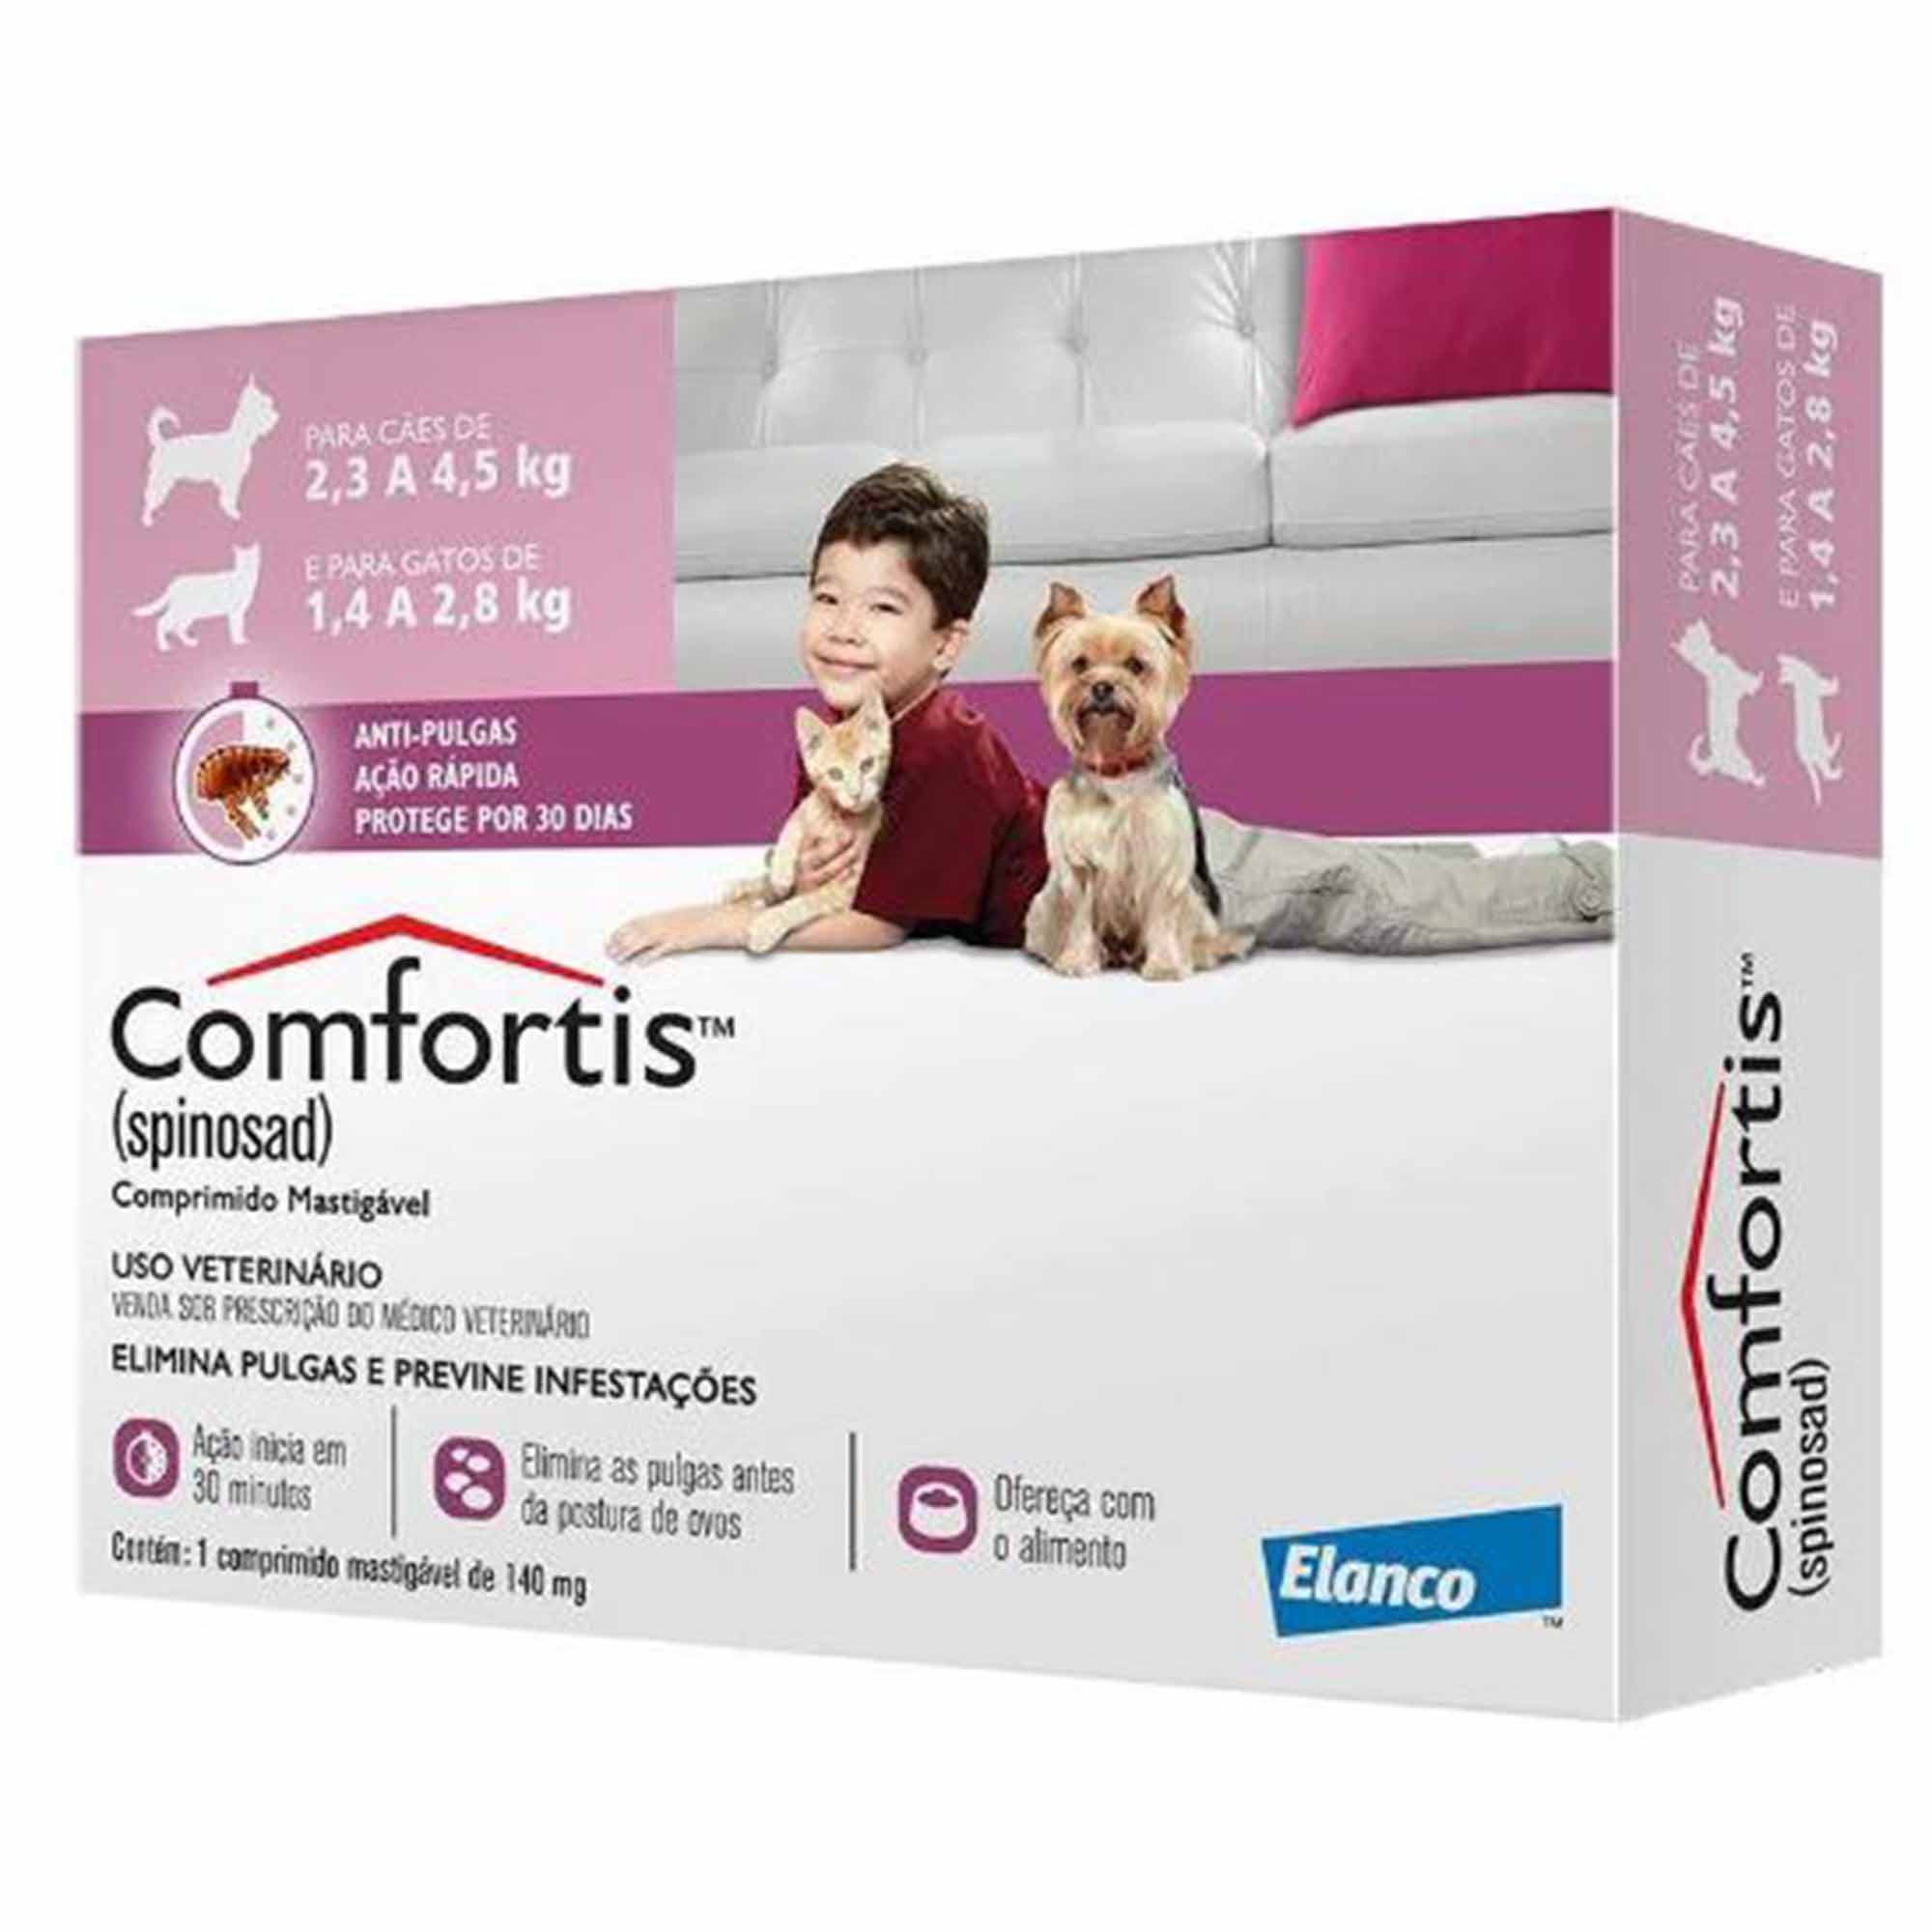 Antipulgas Comfortis 140mg  - 1 comprimido - para Cães de 2,3 a 4,5Kg e Gatos de 1,4 a 2,8Kg